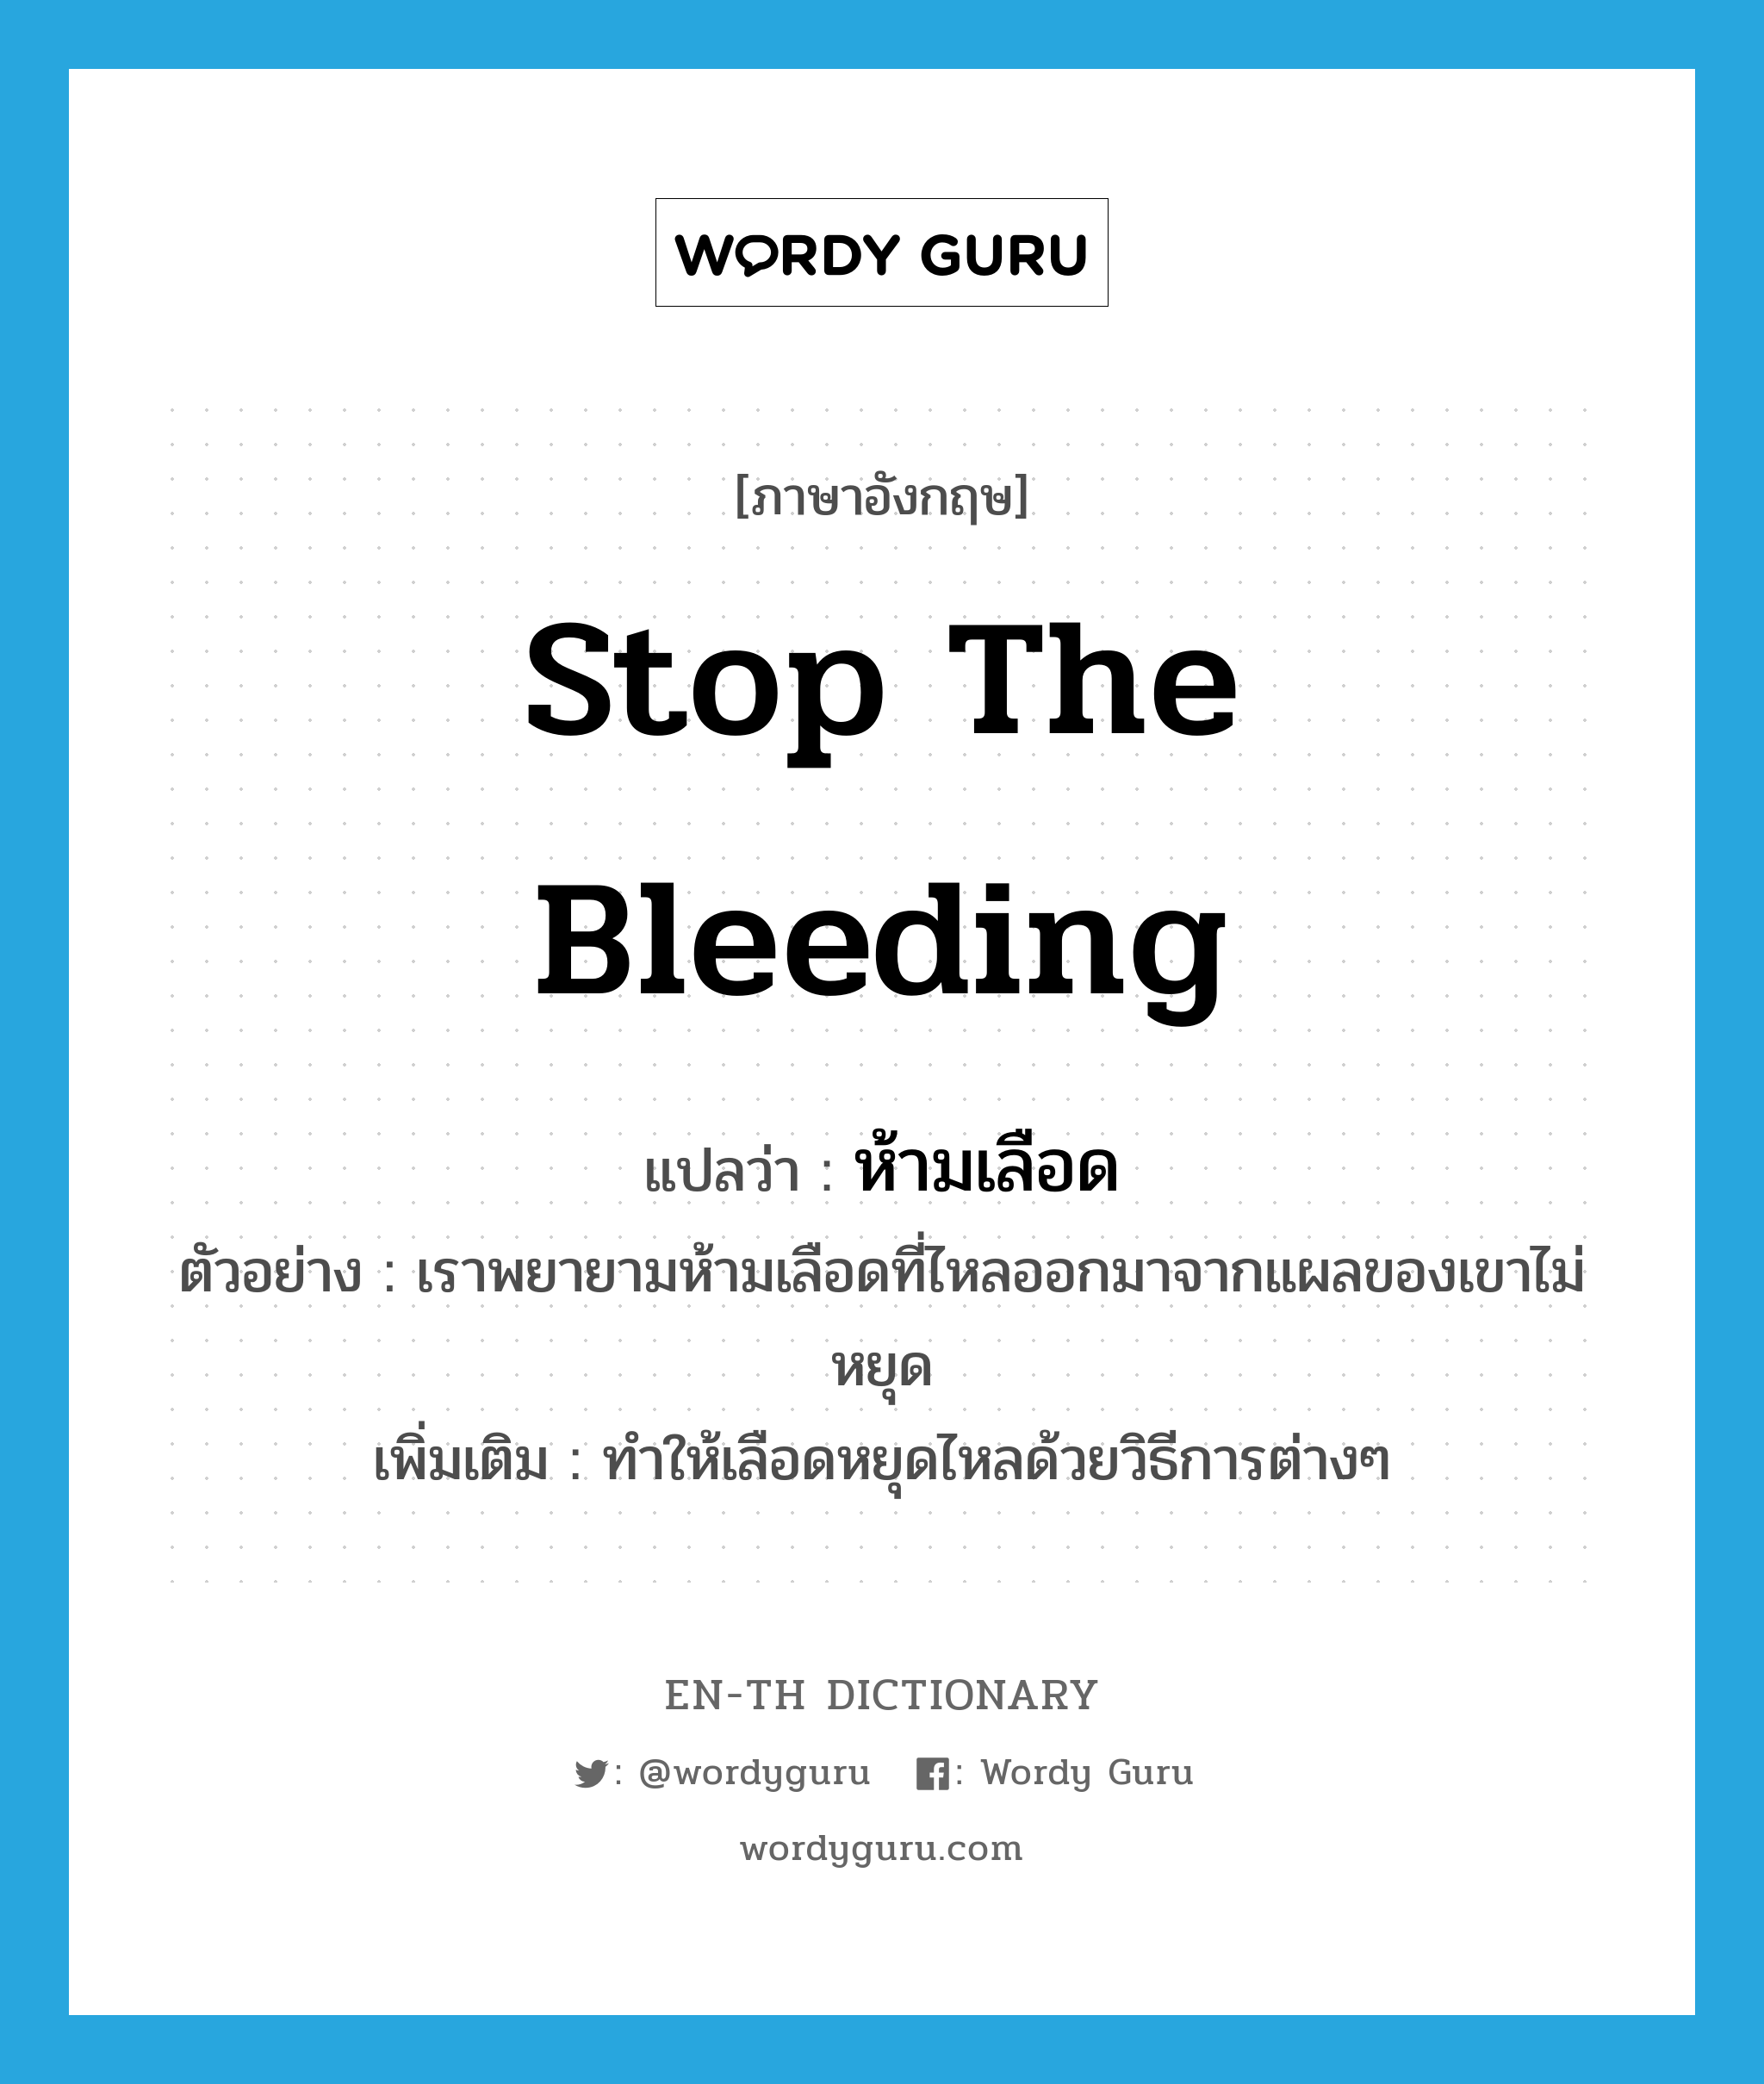 stop the bleeding แปลว่า?, คำศัพท์ภาษาอังกฤษ stop the bleeding แปลว่า ห้ามเลือด ประเภท V ตัวอย่าง เราพยายามห้ามเลือดที่ไหลออกมาจากแผลของเขาไม่หยุด เพิ่มเติม ทำให้เลือดหยุดไหลด้วยวิธีการต่างๆ หมวด V